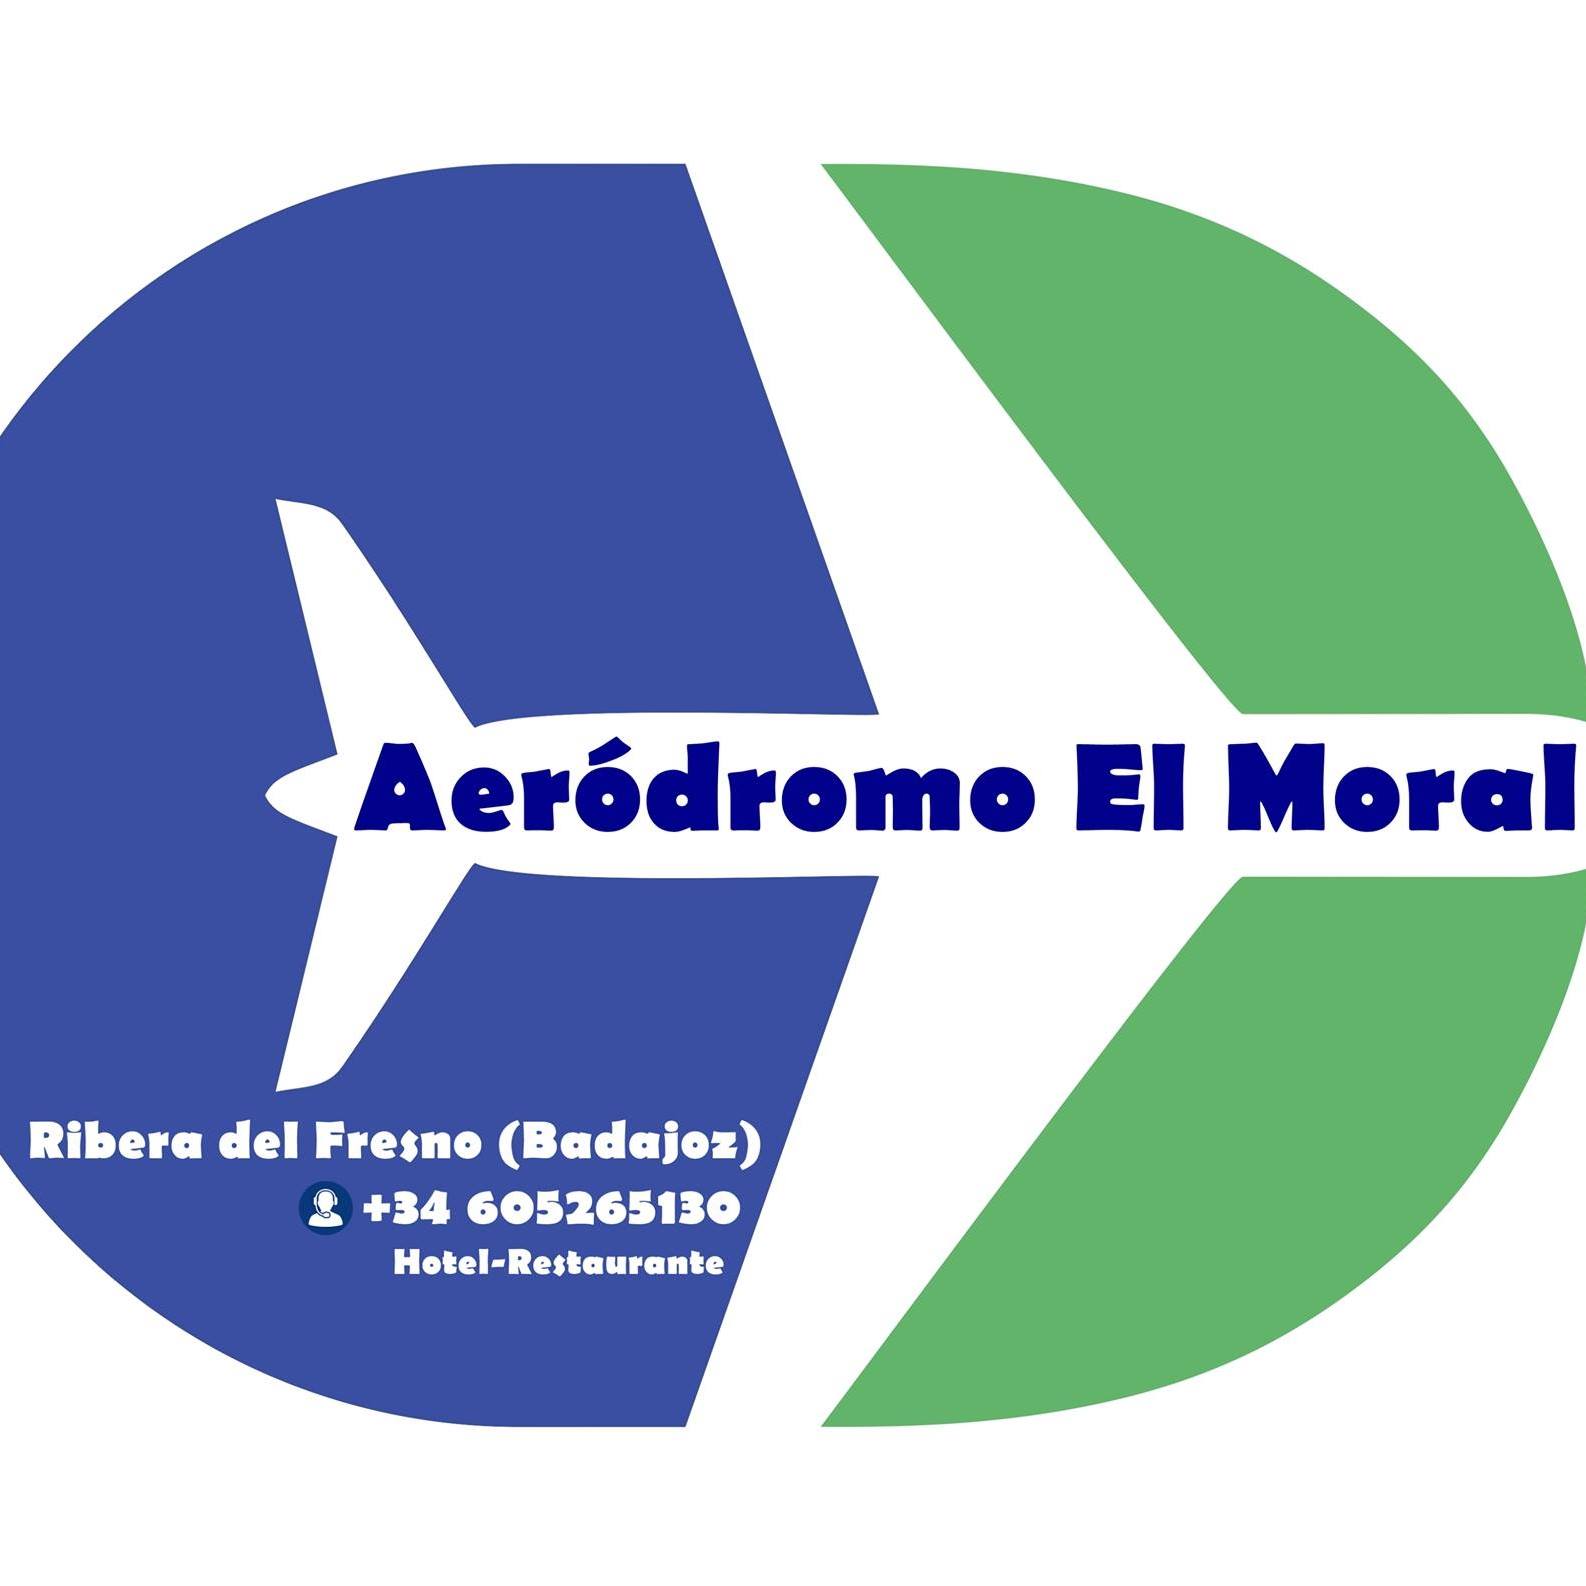 logo aerodromo el moral